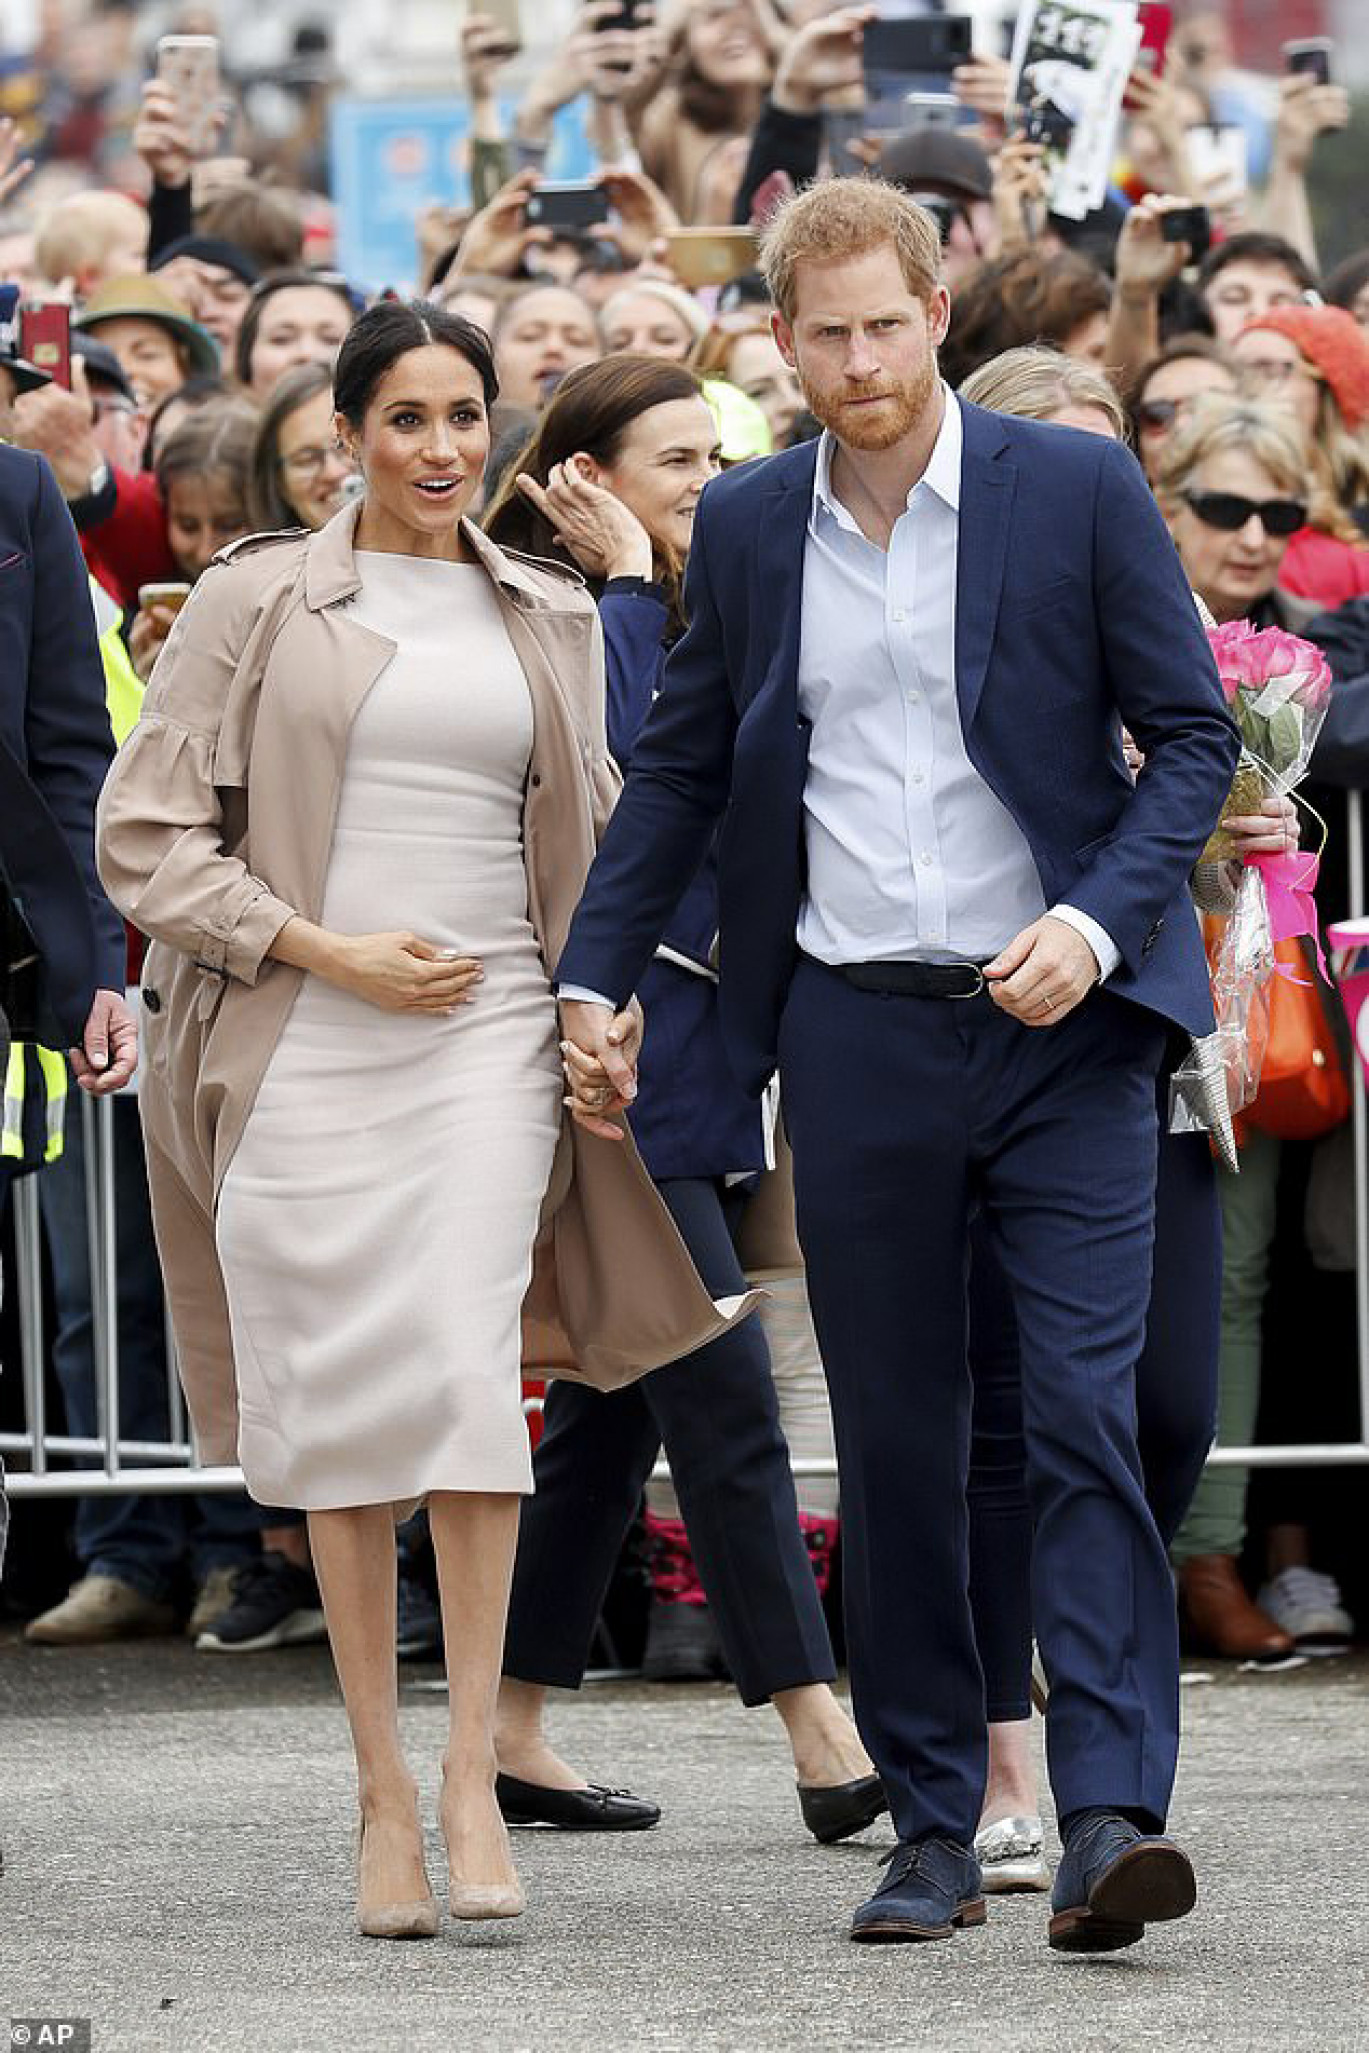 Hoàng tử Anh Harry và Công nương Meghan Markle đã nhận được sự chào đón nồng nhiệt của người dân địa phương trong chuyến công du hoàng gia tới New Zealand. Trong chuyến công du hoàng gia chính thức này, cặp đôi đã gặp gỡ với người dân địa phương, vận động, kêu gọi các dự án dành cho thanh thiếu niên.